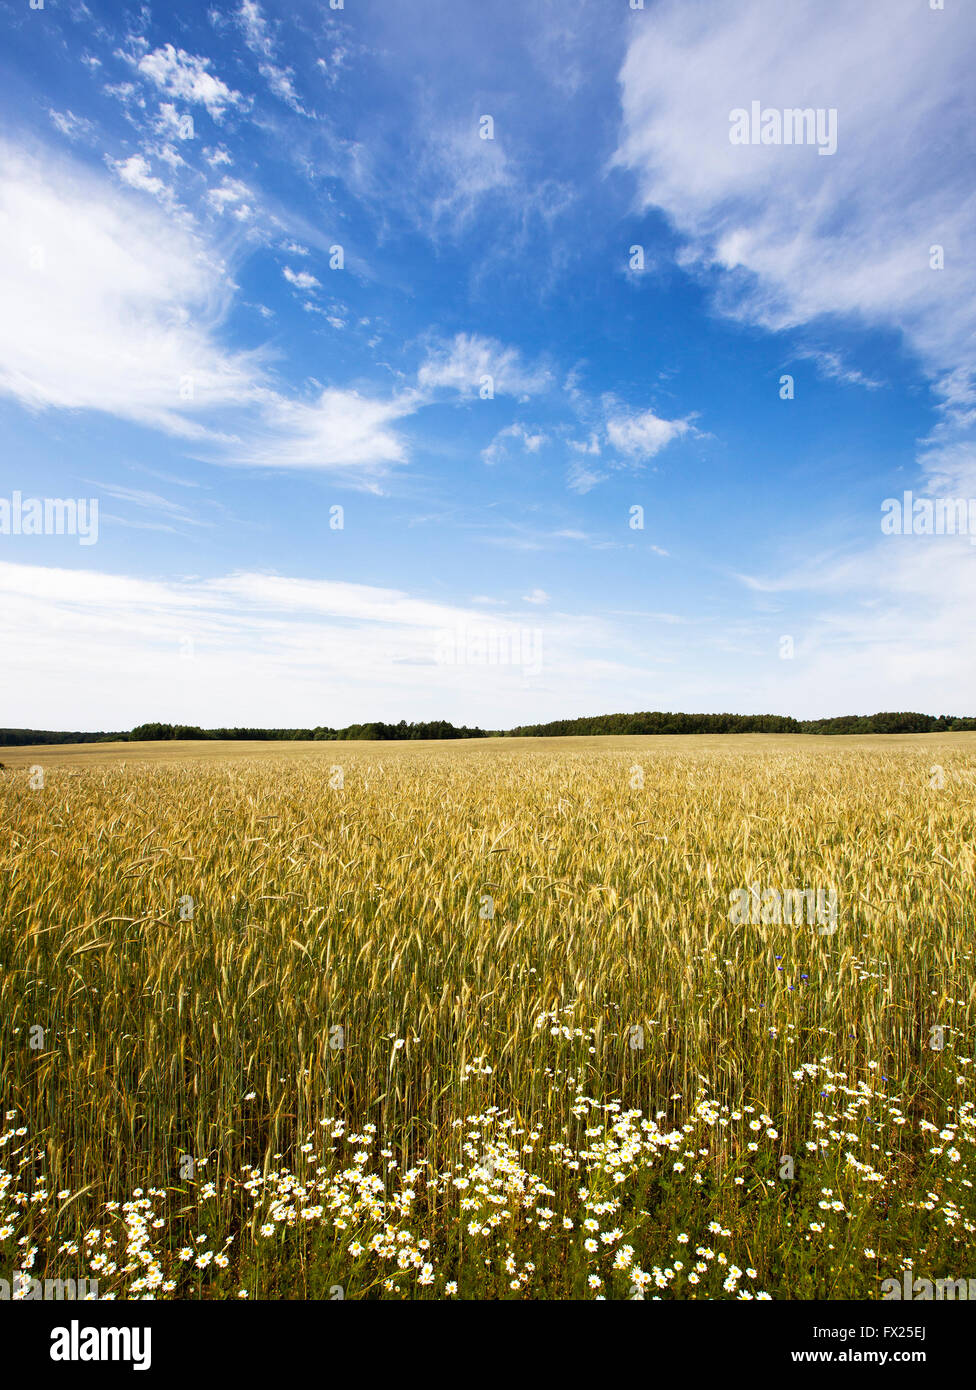 wild flowers in wheat field Stock Photo